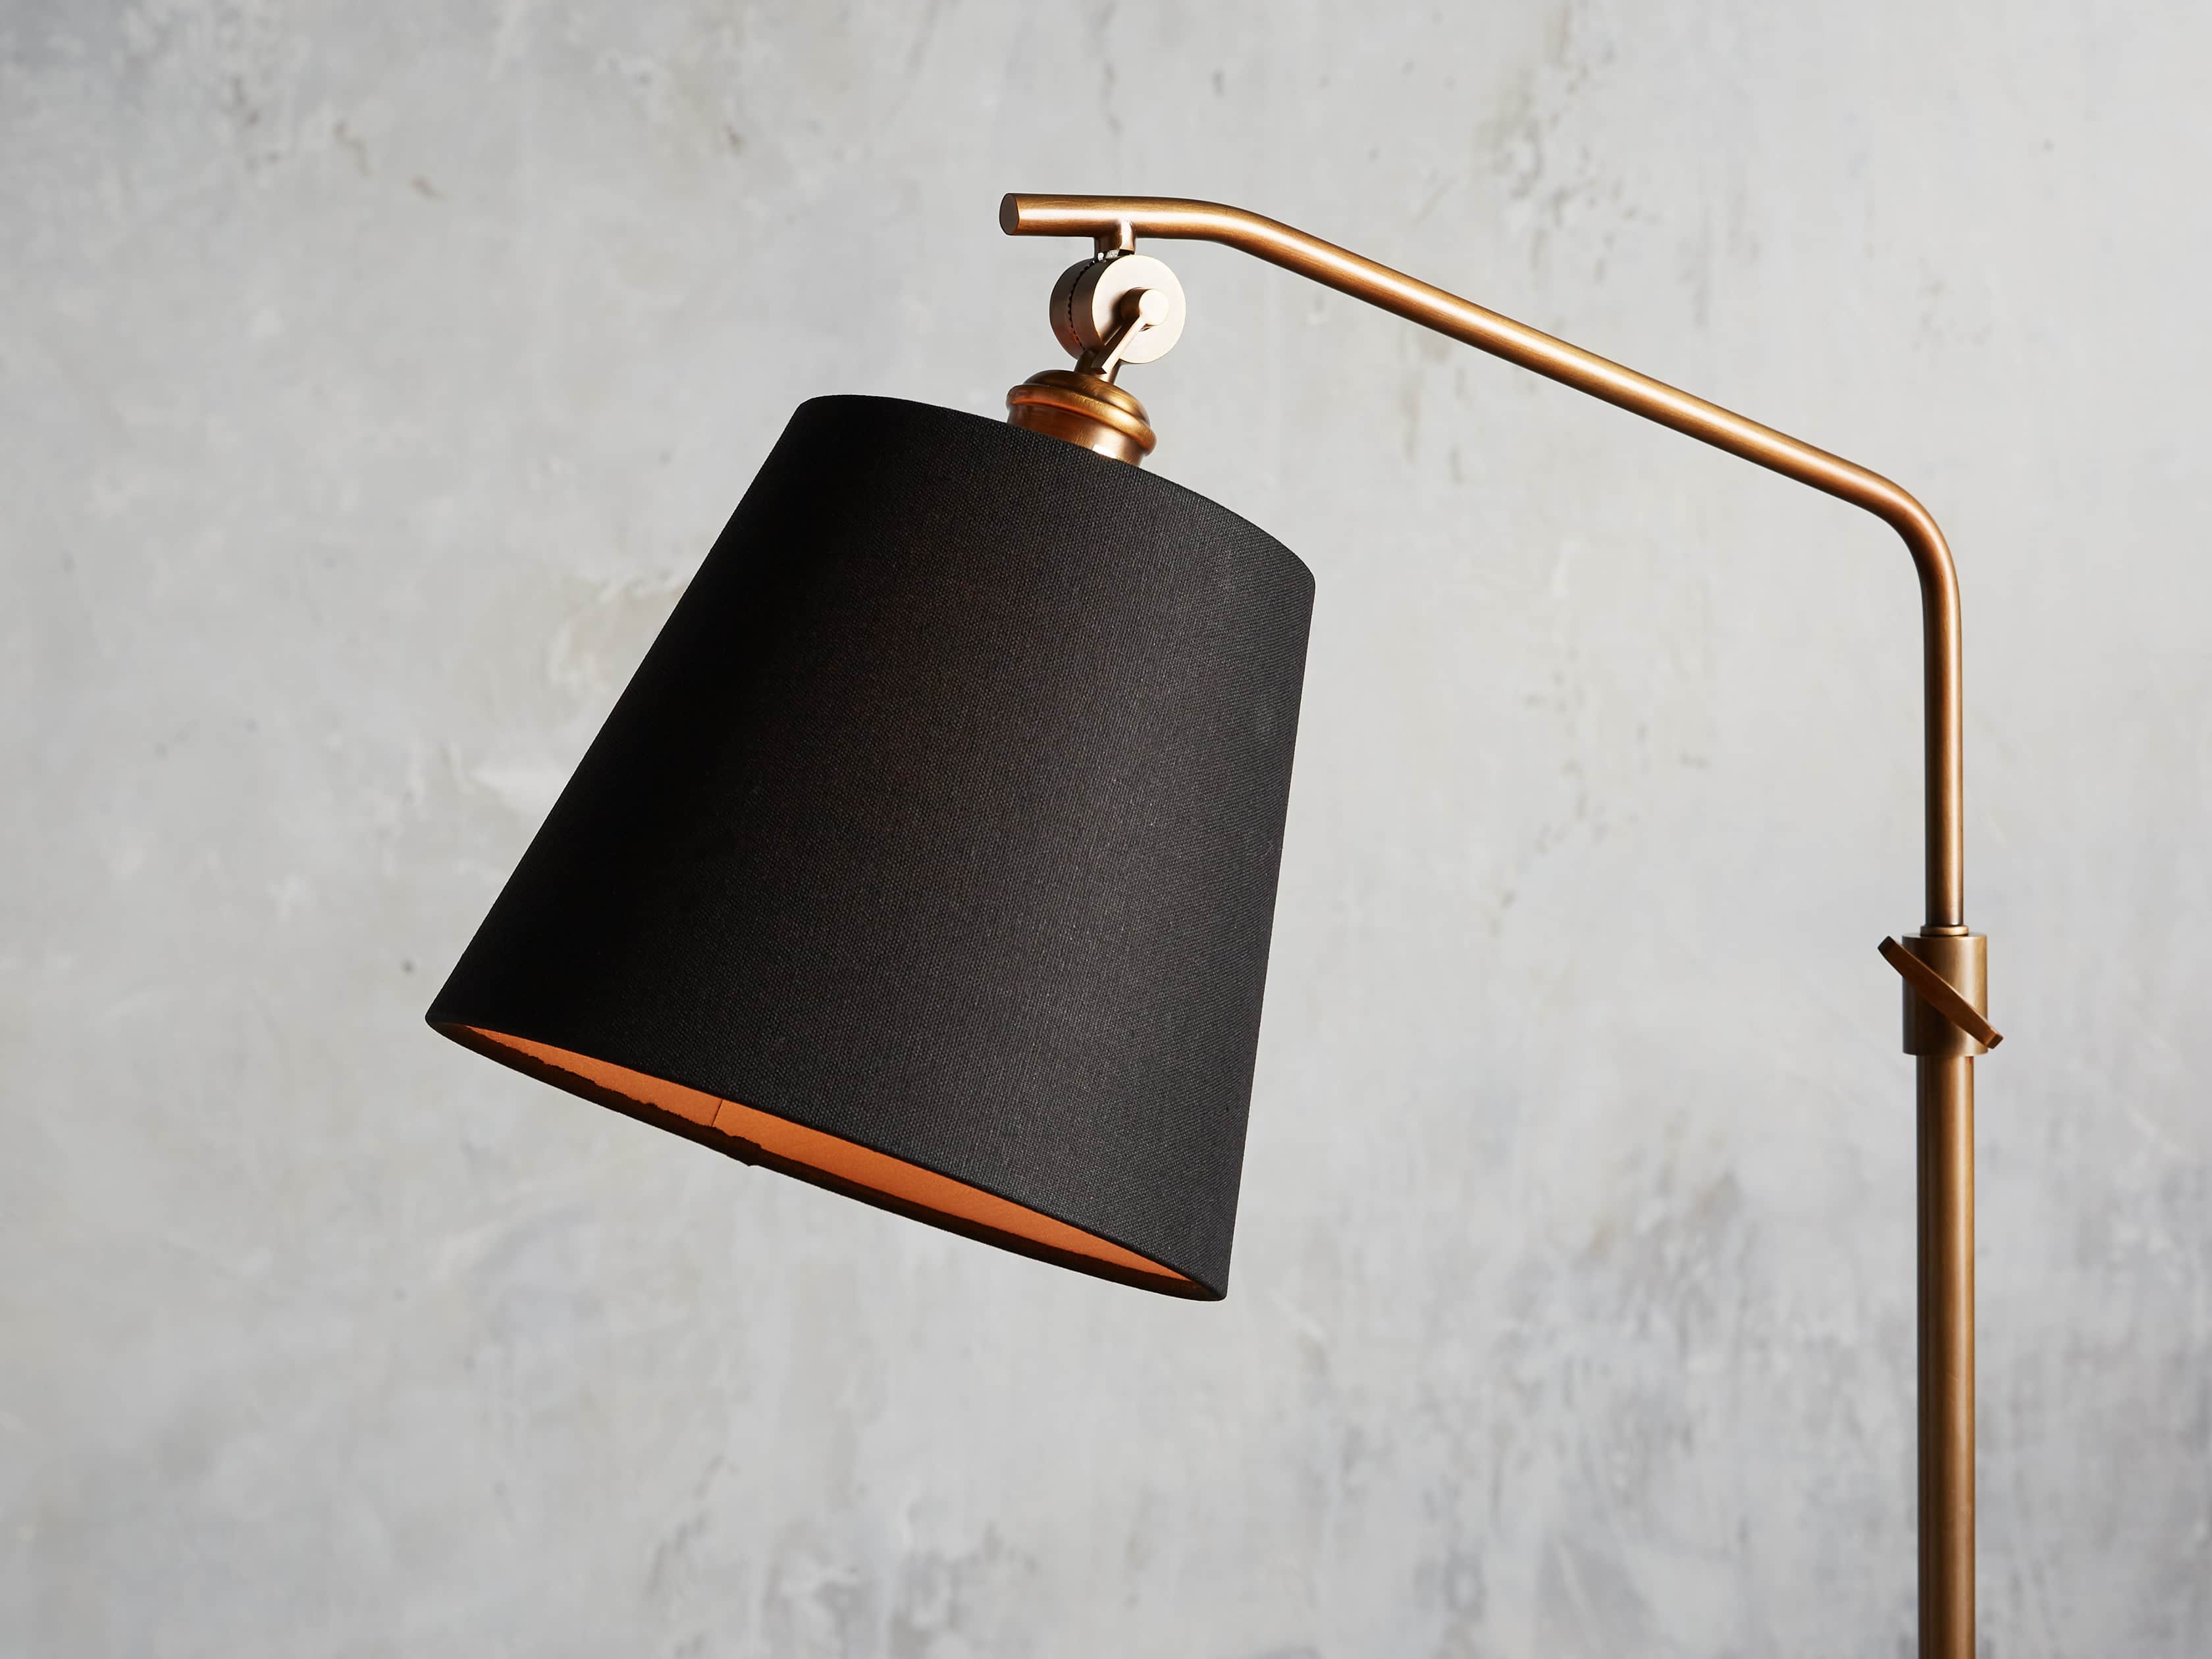 Kellen Antiqued Brass Floor Lamp Arhaus, Black Shade Floor Lamp